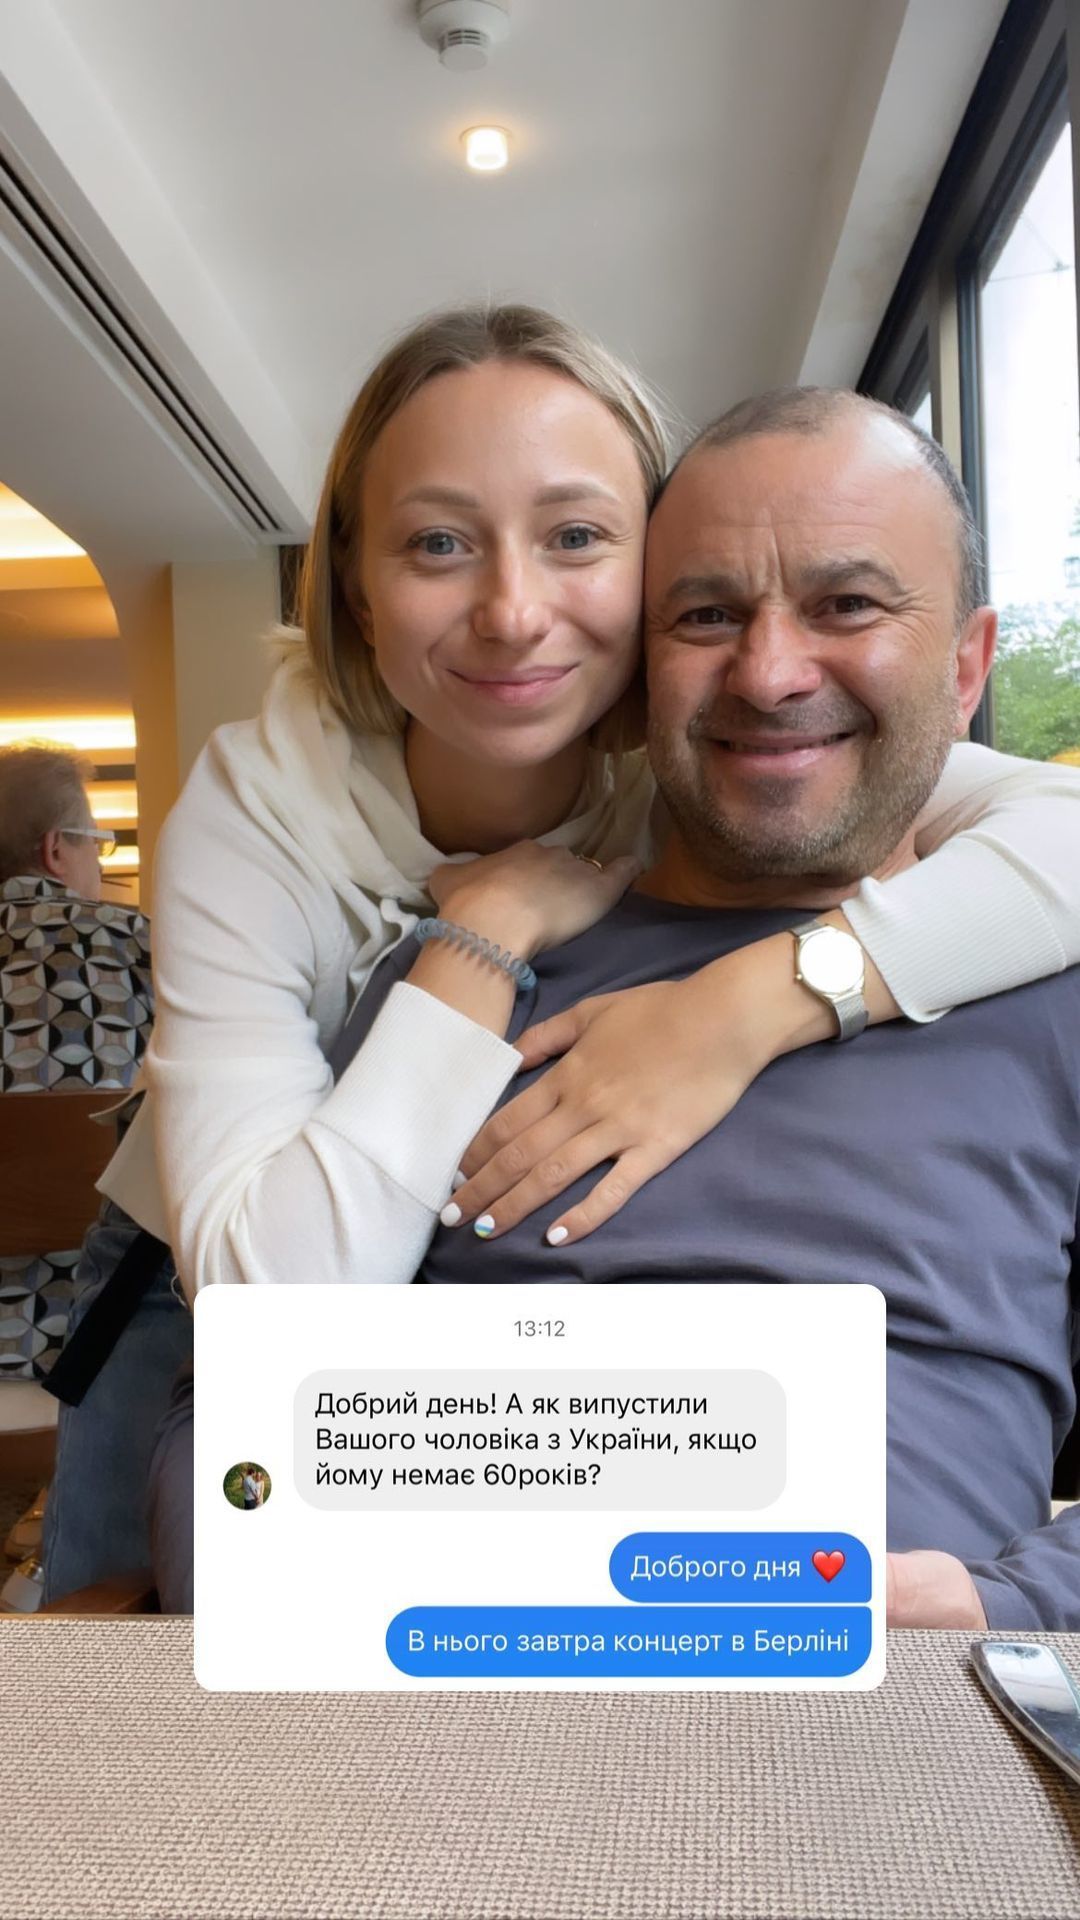 Жена Виктора Павлика объяснила, почему он покинул Украину и как его выпустили